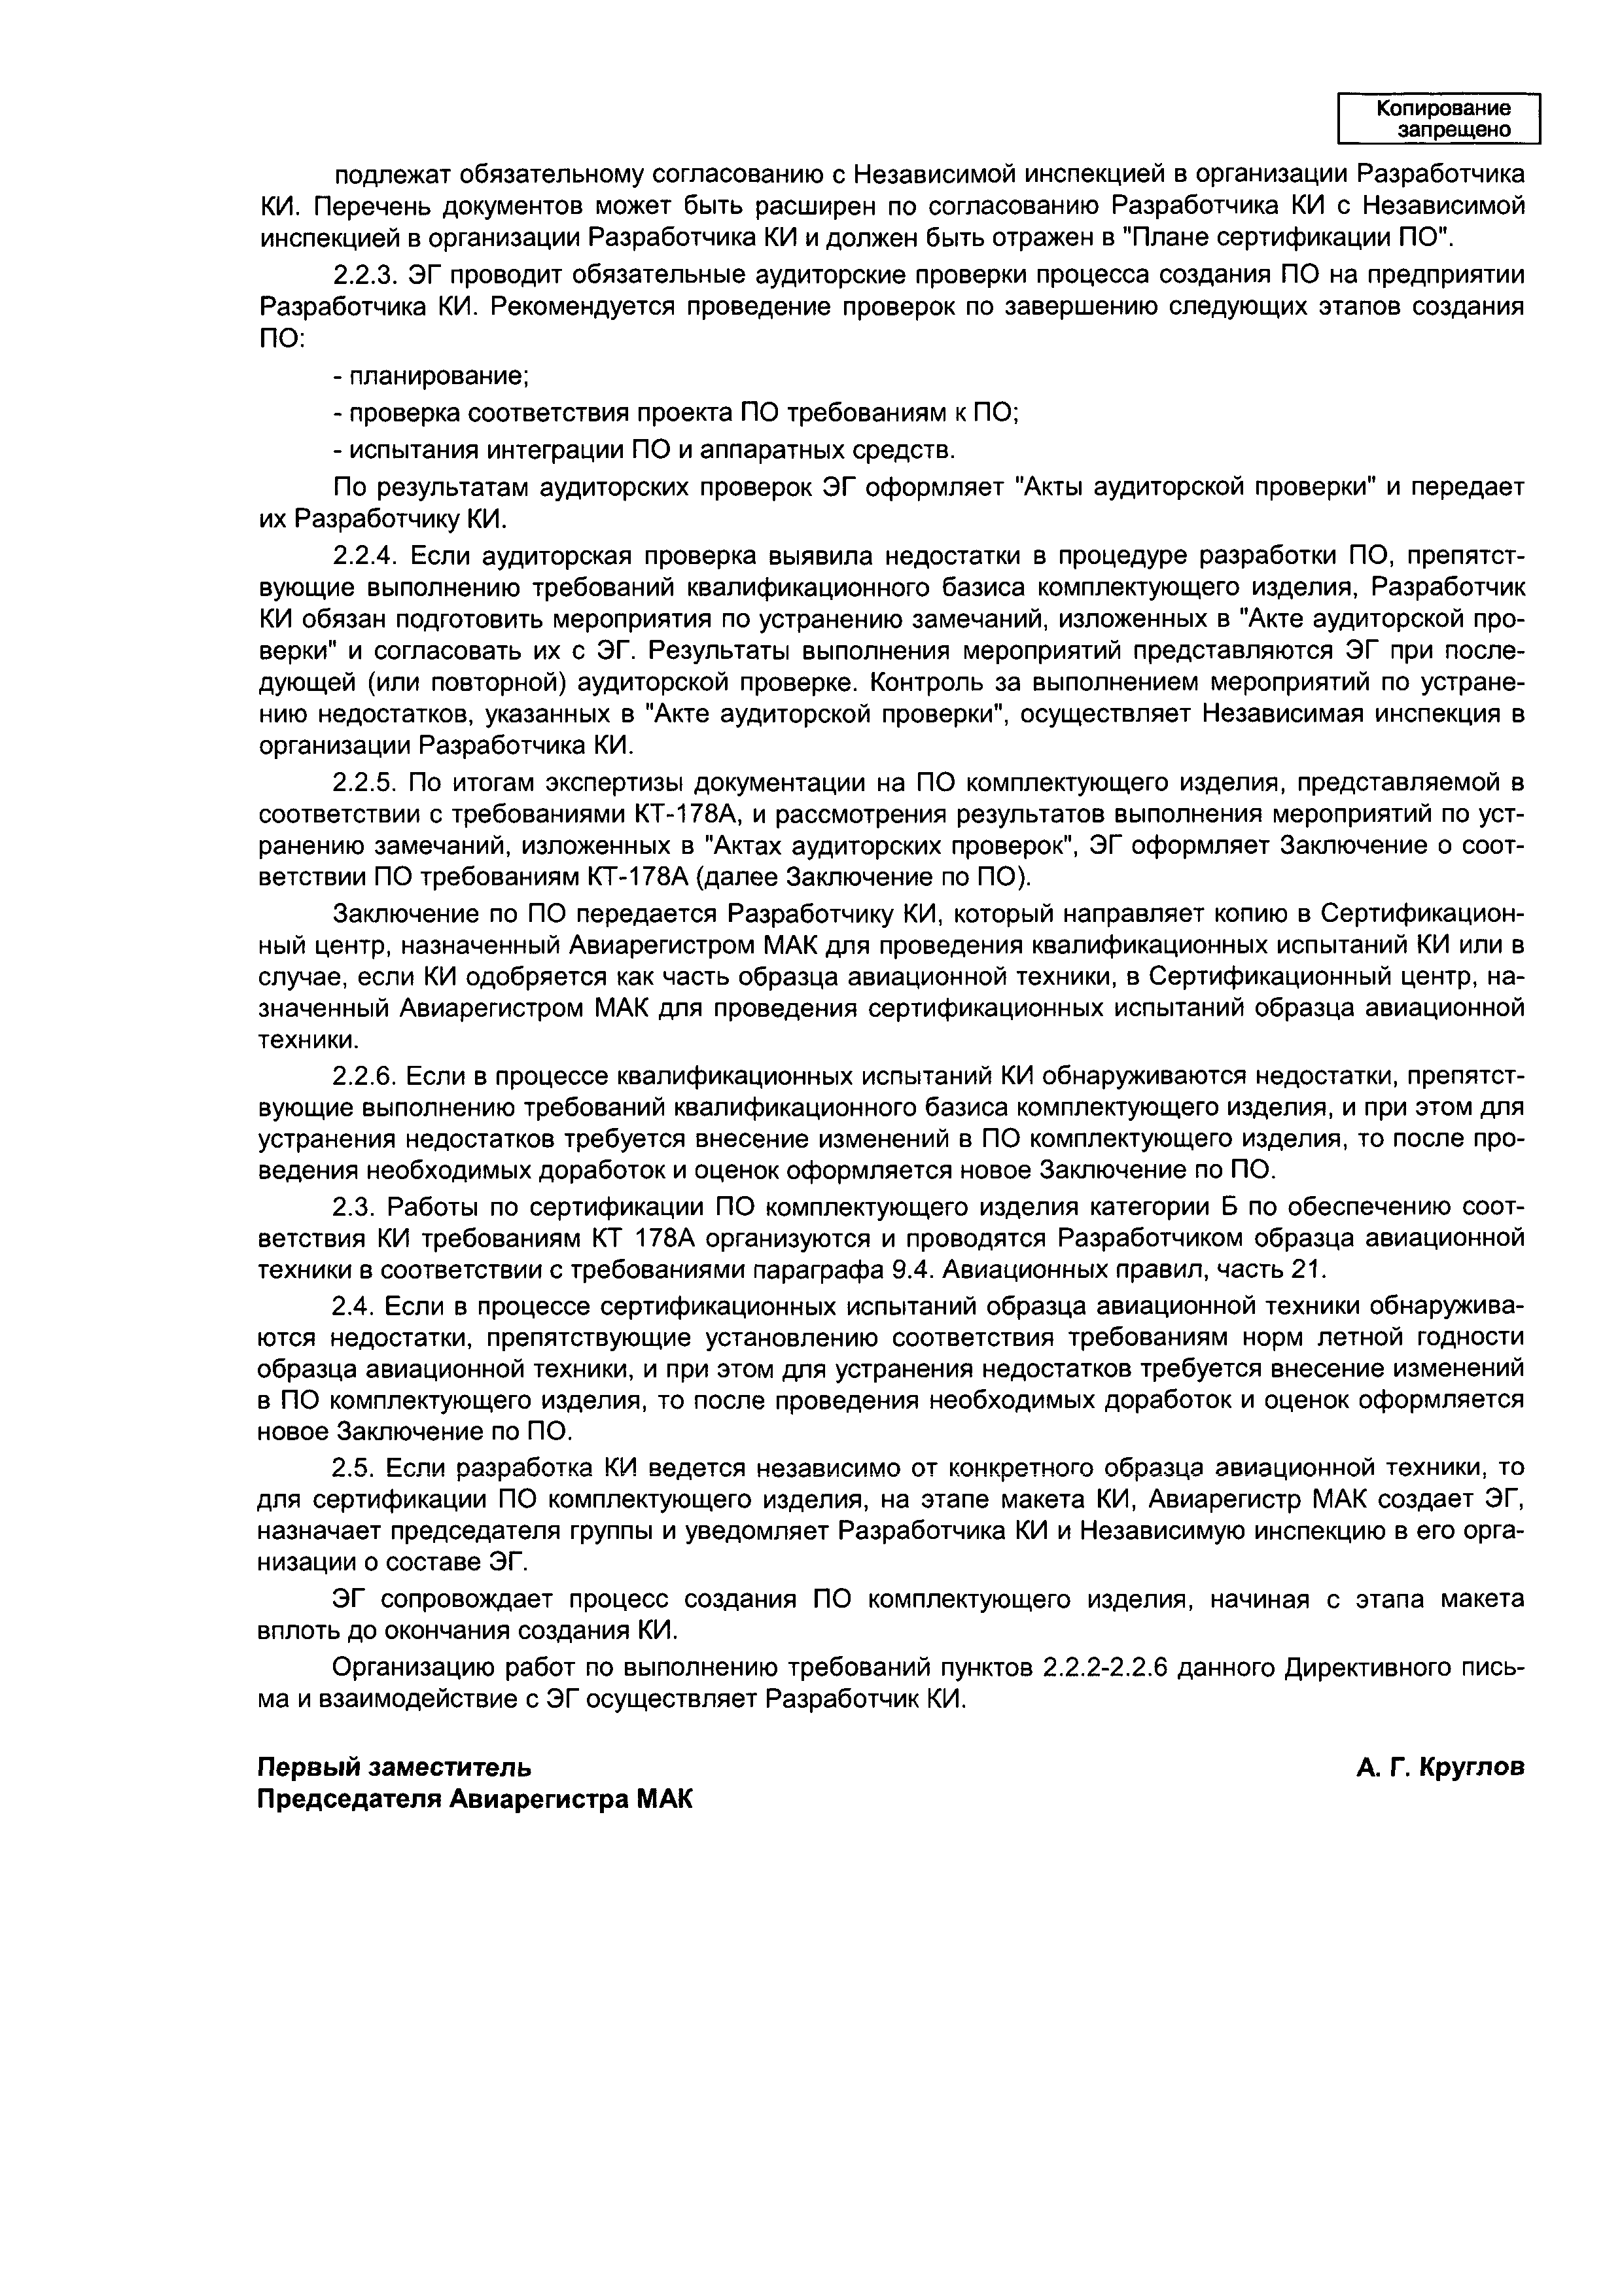 Директивное письмо 3-97